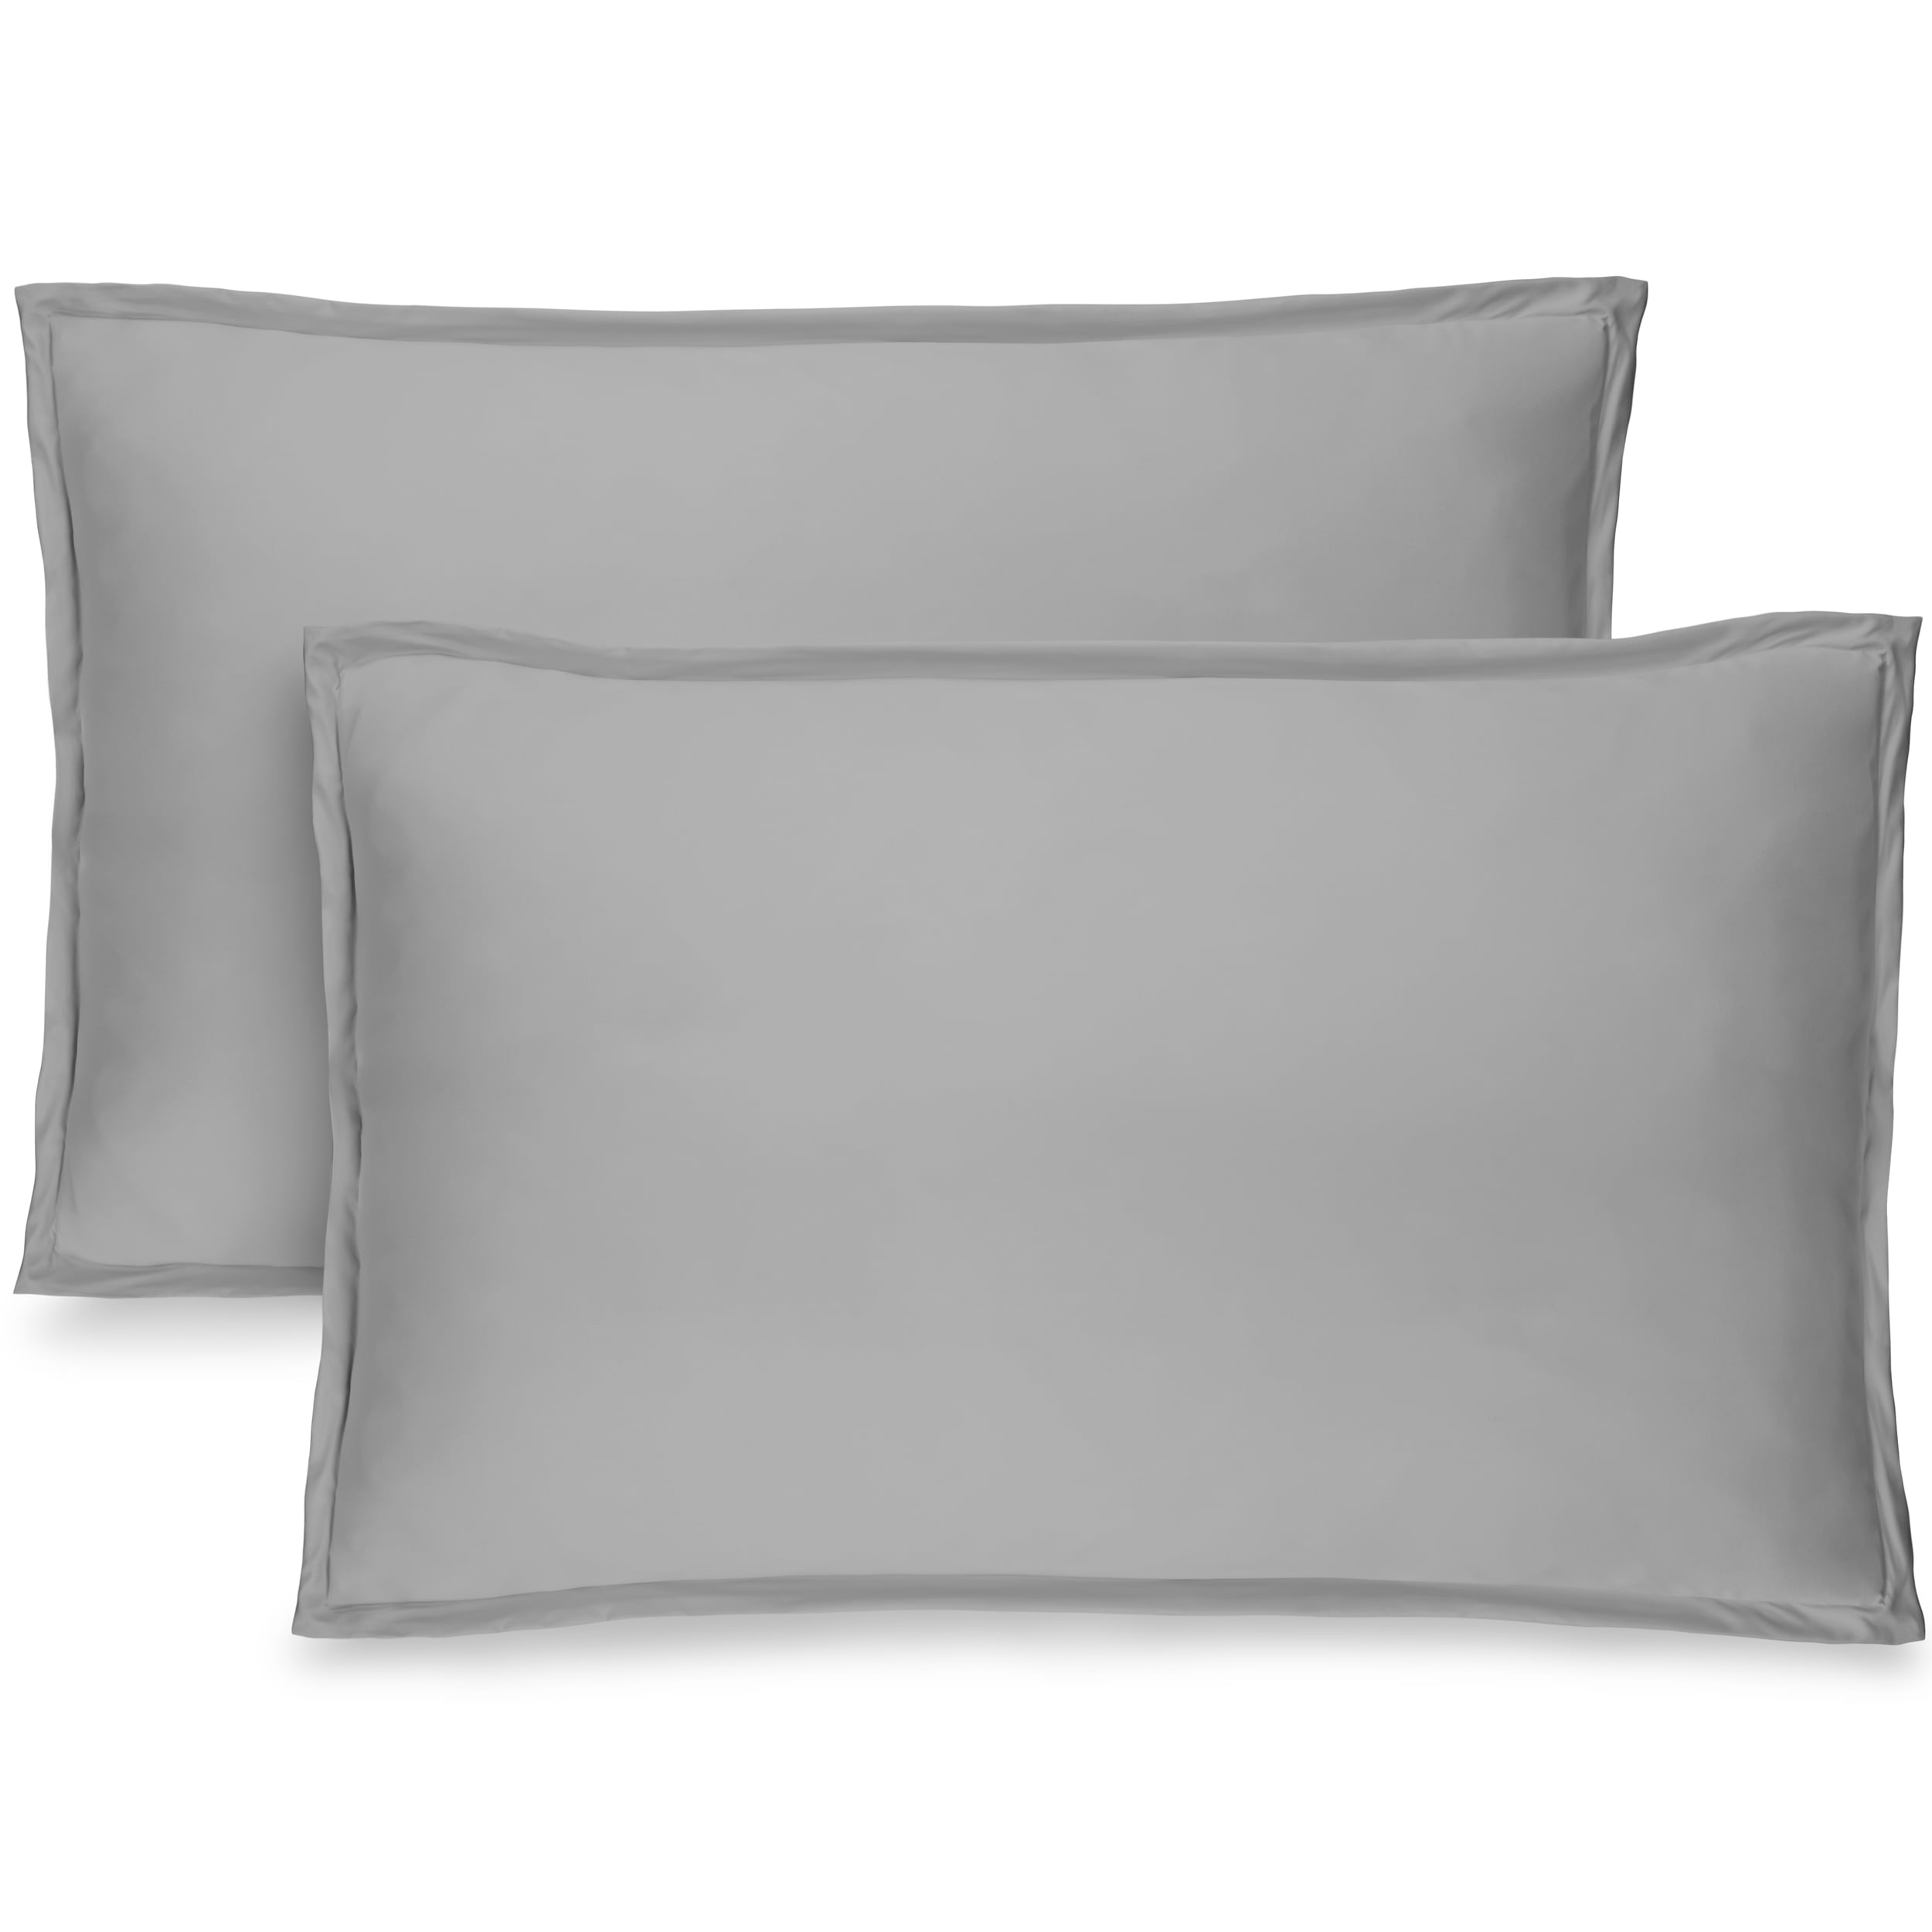 1800 Series Pillow Shams Standard Queen King Ultra Soft Pillowcases Set of 2 